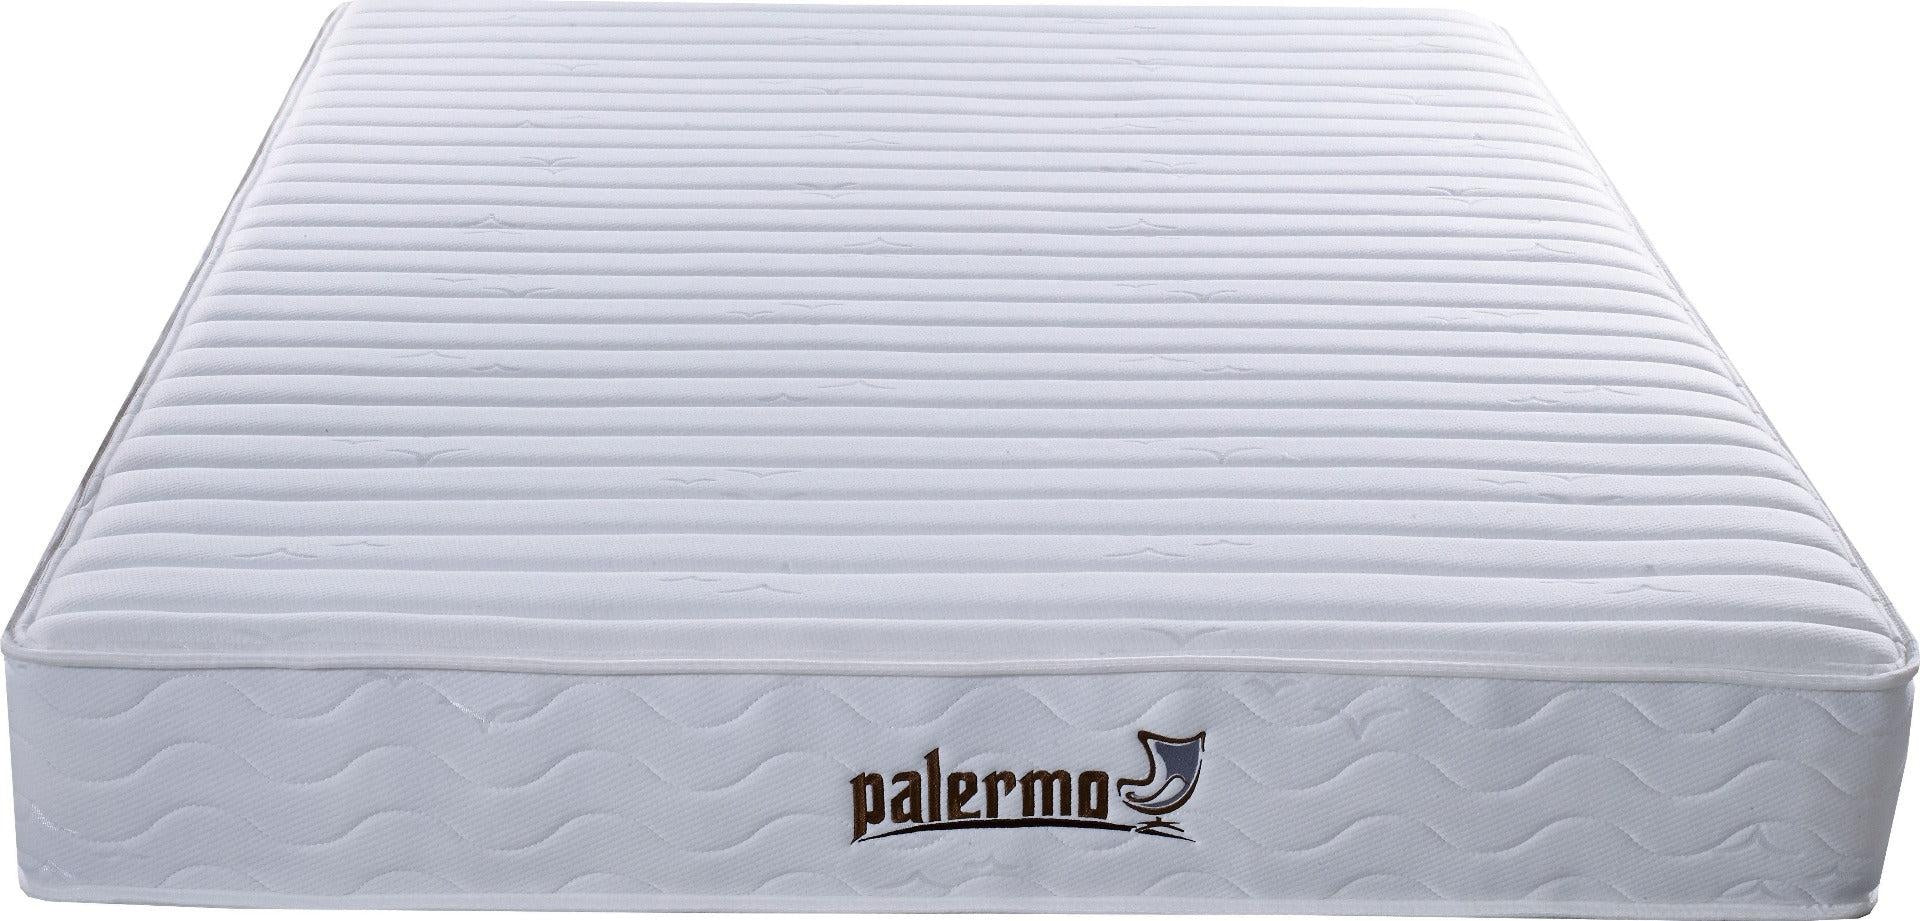 Palermo Contour 20cm Encased Coil King Mattress CertiPUR-US Certified Foam Deals499